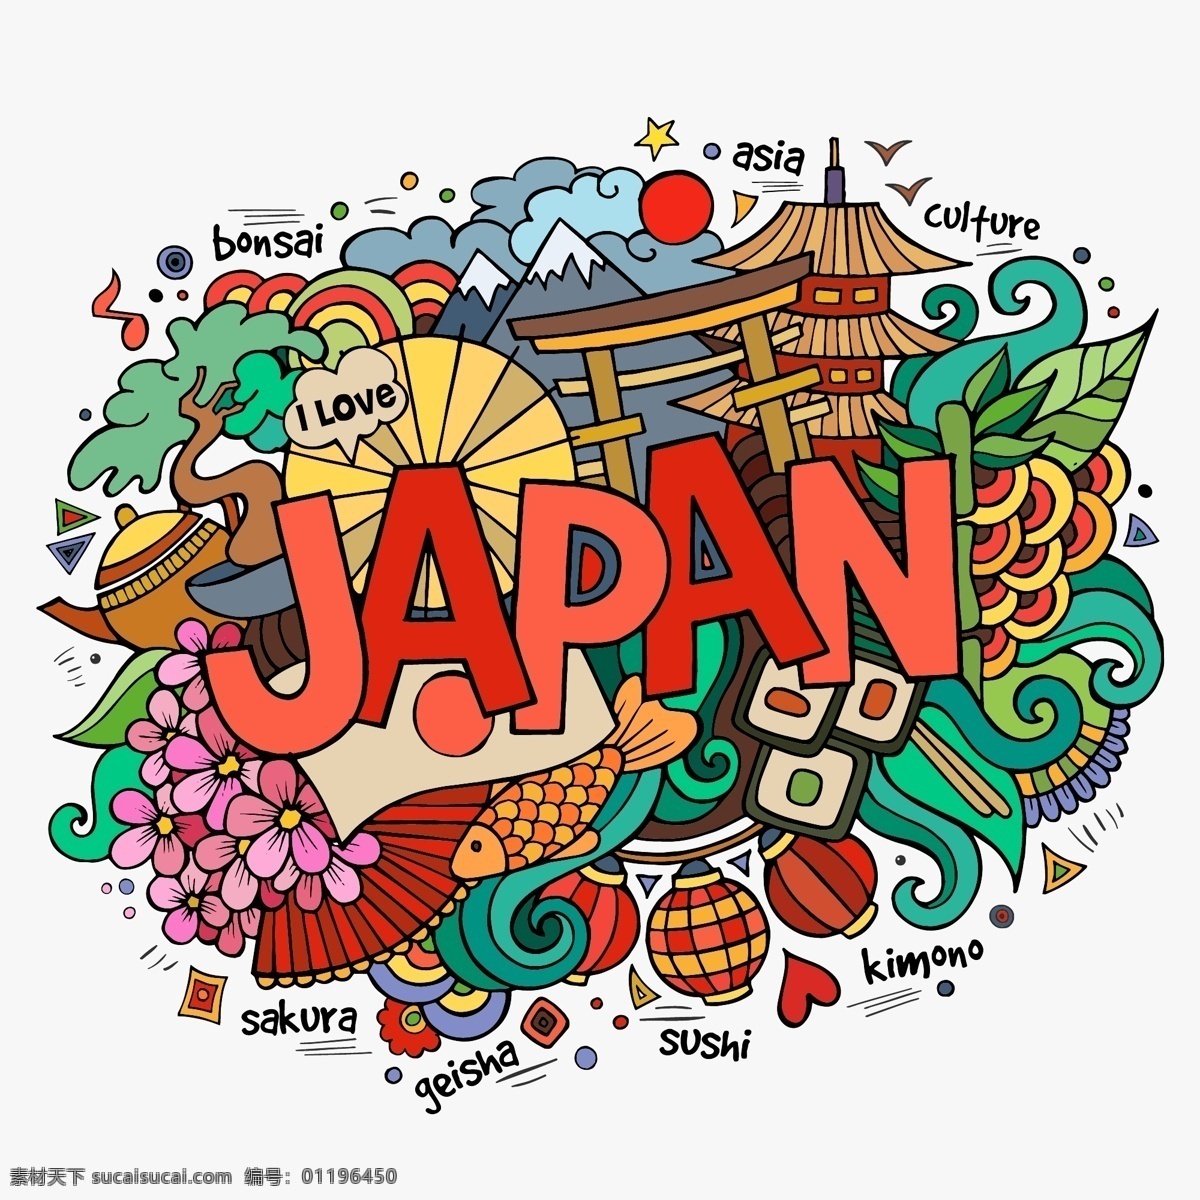 时尚 创意 日本 旅行 元素 插画 建筑 特色